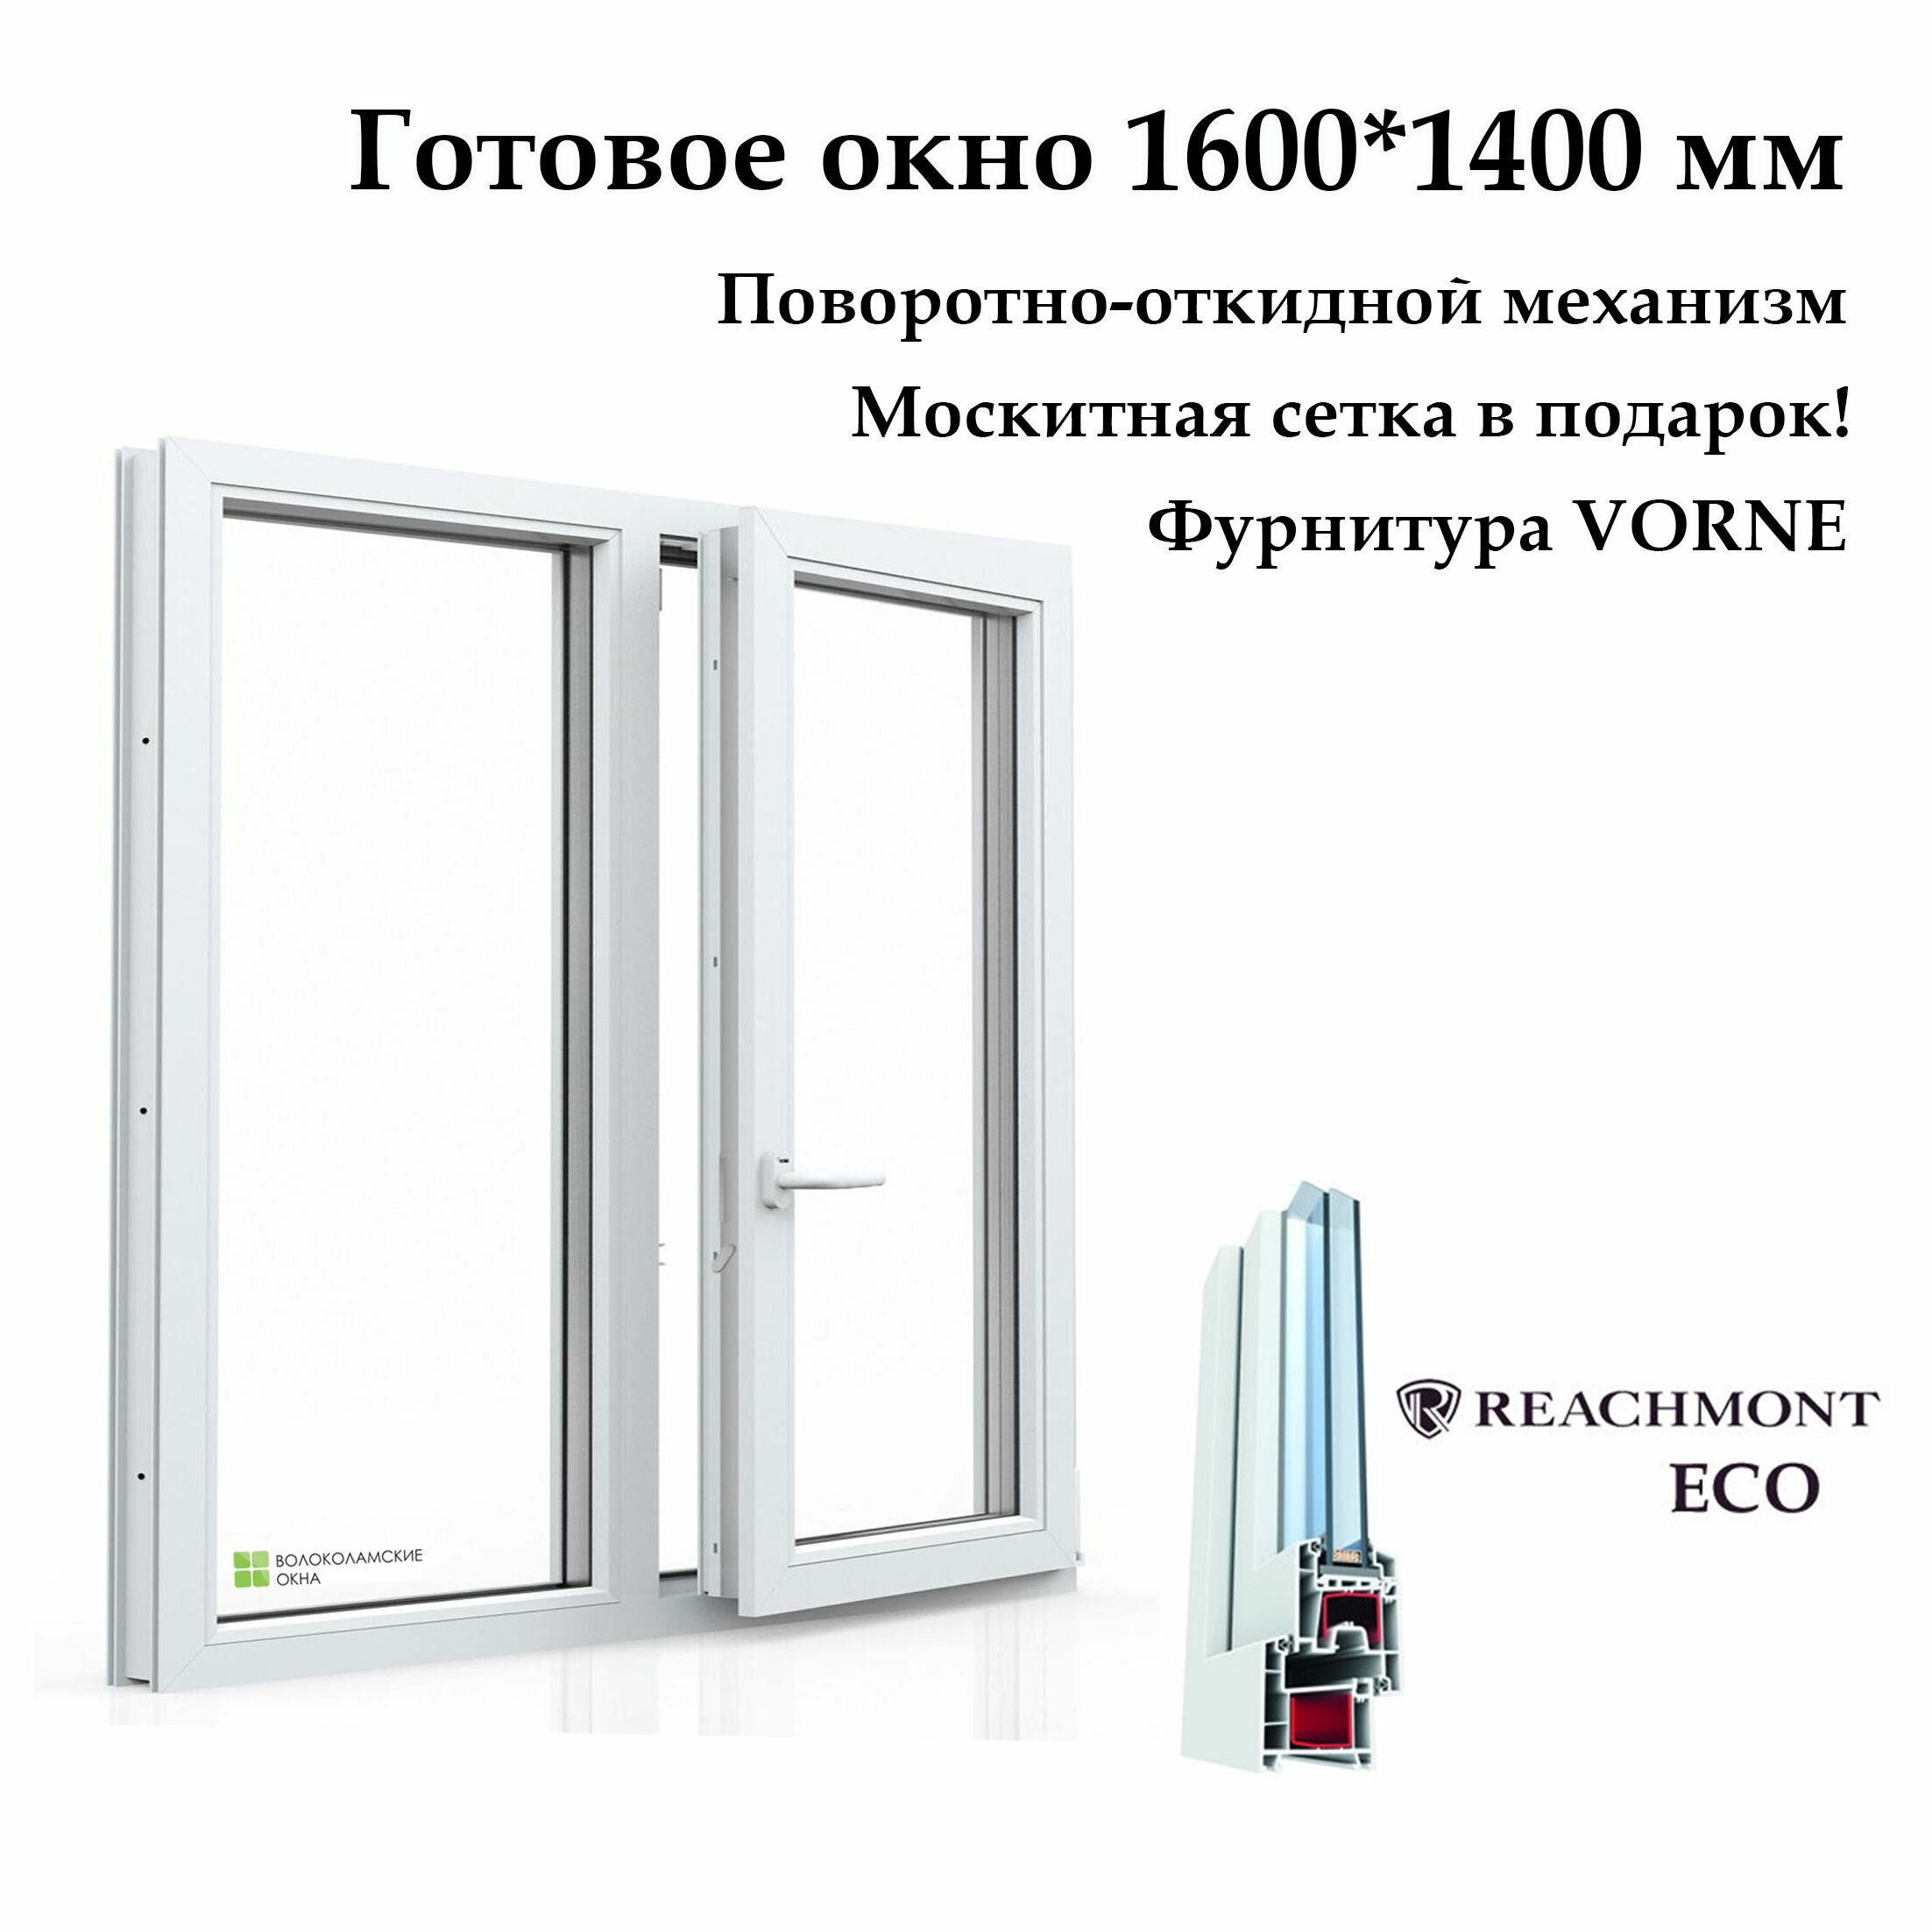 Окно двухстворчатое, Reachmont ECO-60 (Фурнитура VORNE) с москитной сеткой, белое, правая створка поворотно-откидная